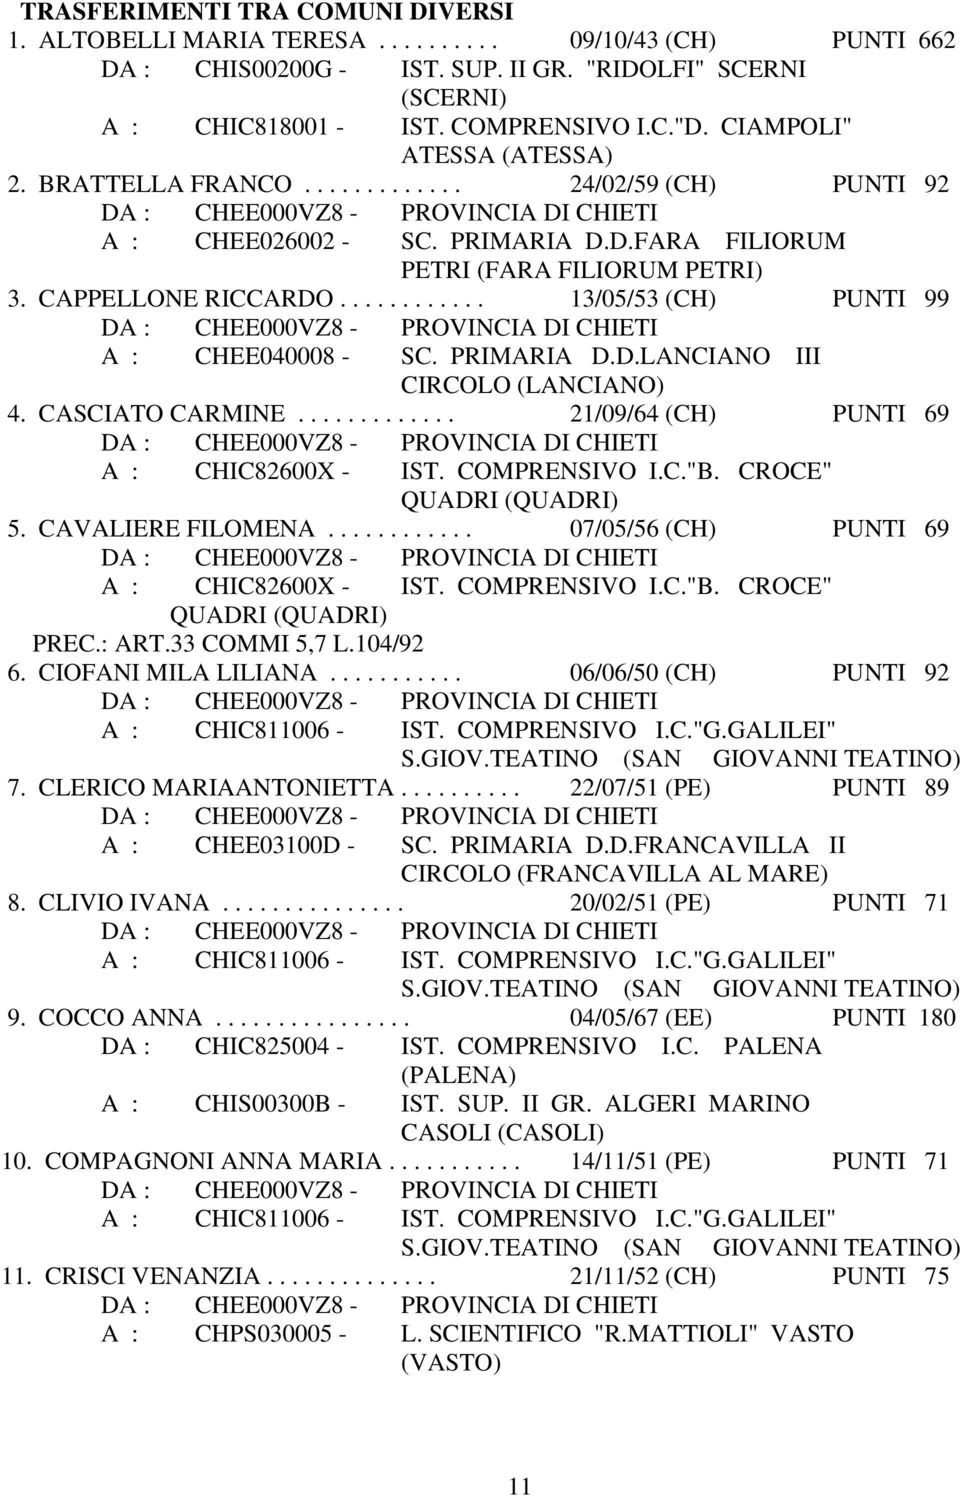 PRIMARIA D.D.LANCIANO III CIRCOLO 4. CASCIATO CARMINE............. 21/09/64 (CH) PUNTI 69 A : CHIC82600X - IST. COMPRENSIVO I.C."B. CROCE" QUADRI (QUADRI) 5. CAVALIERE FILOMENA.